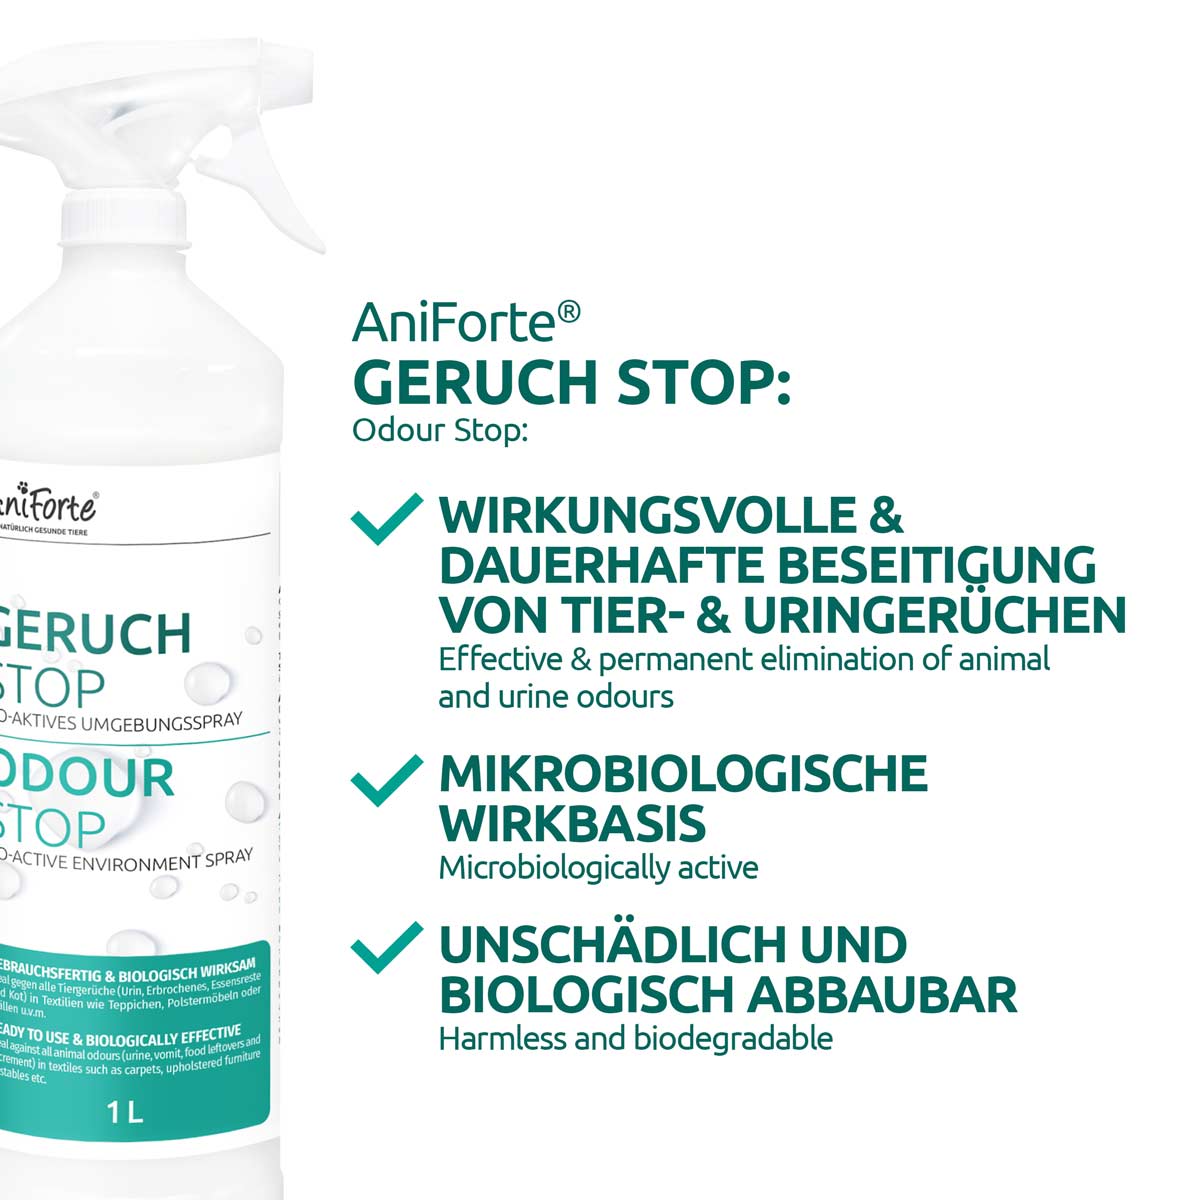 Geruch-STOP - AniForte